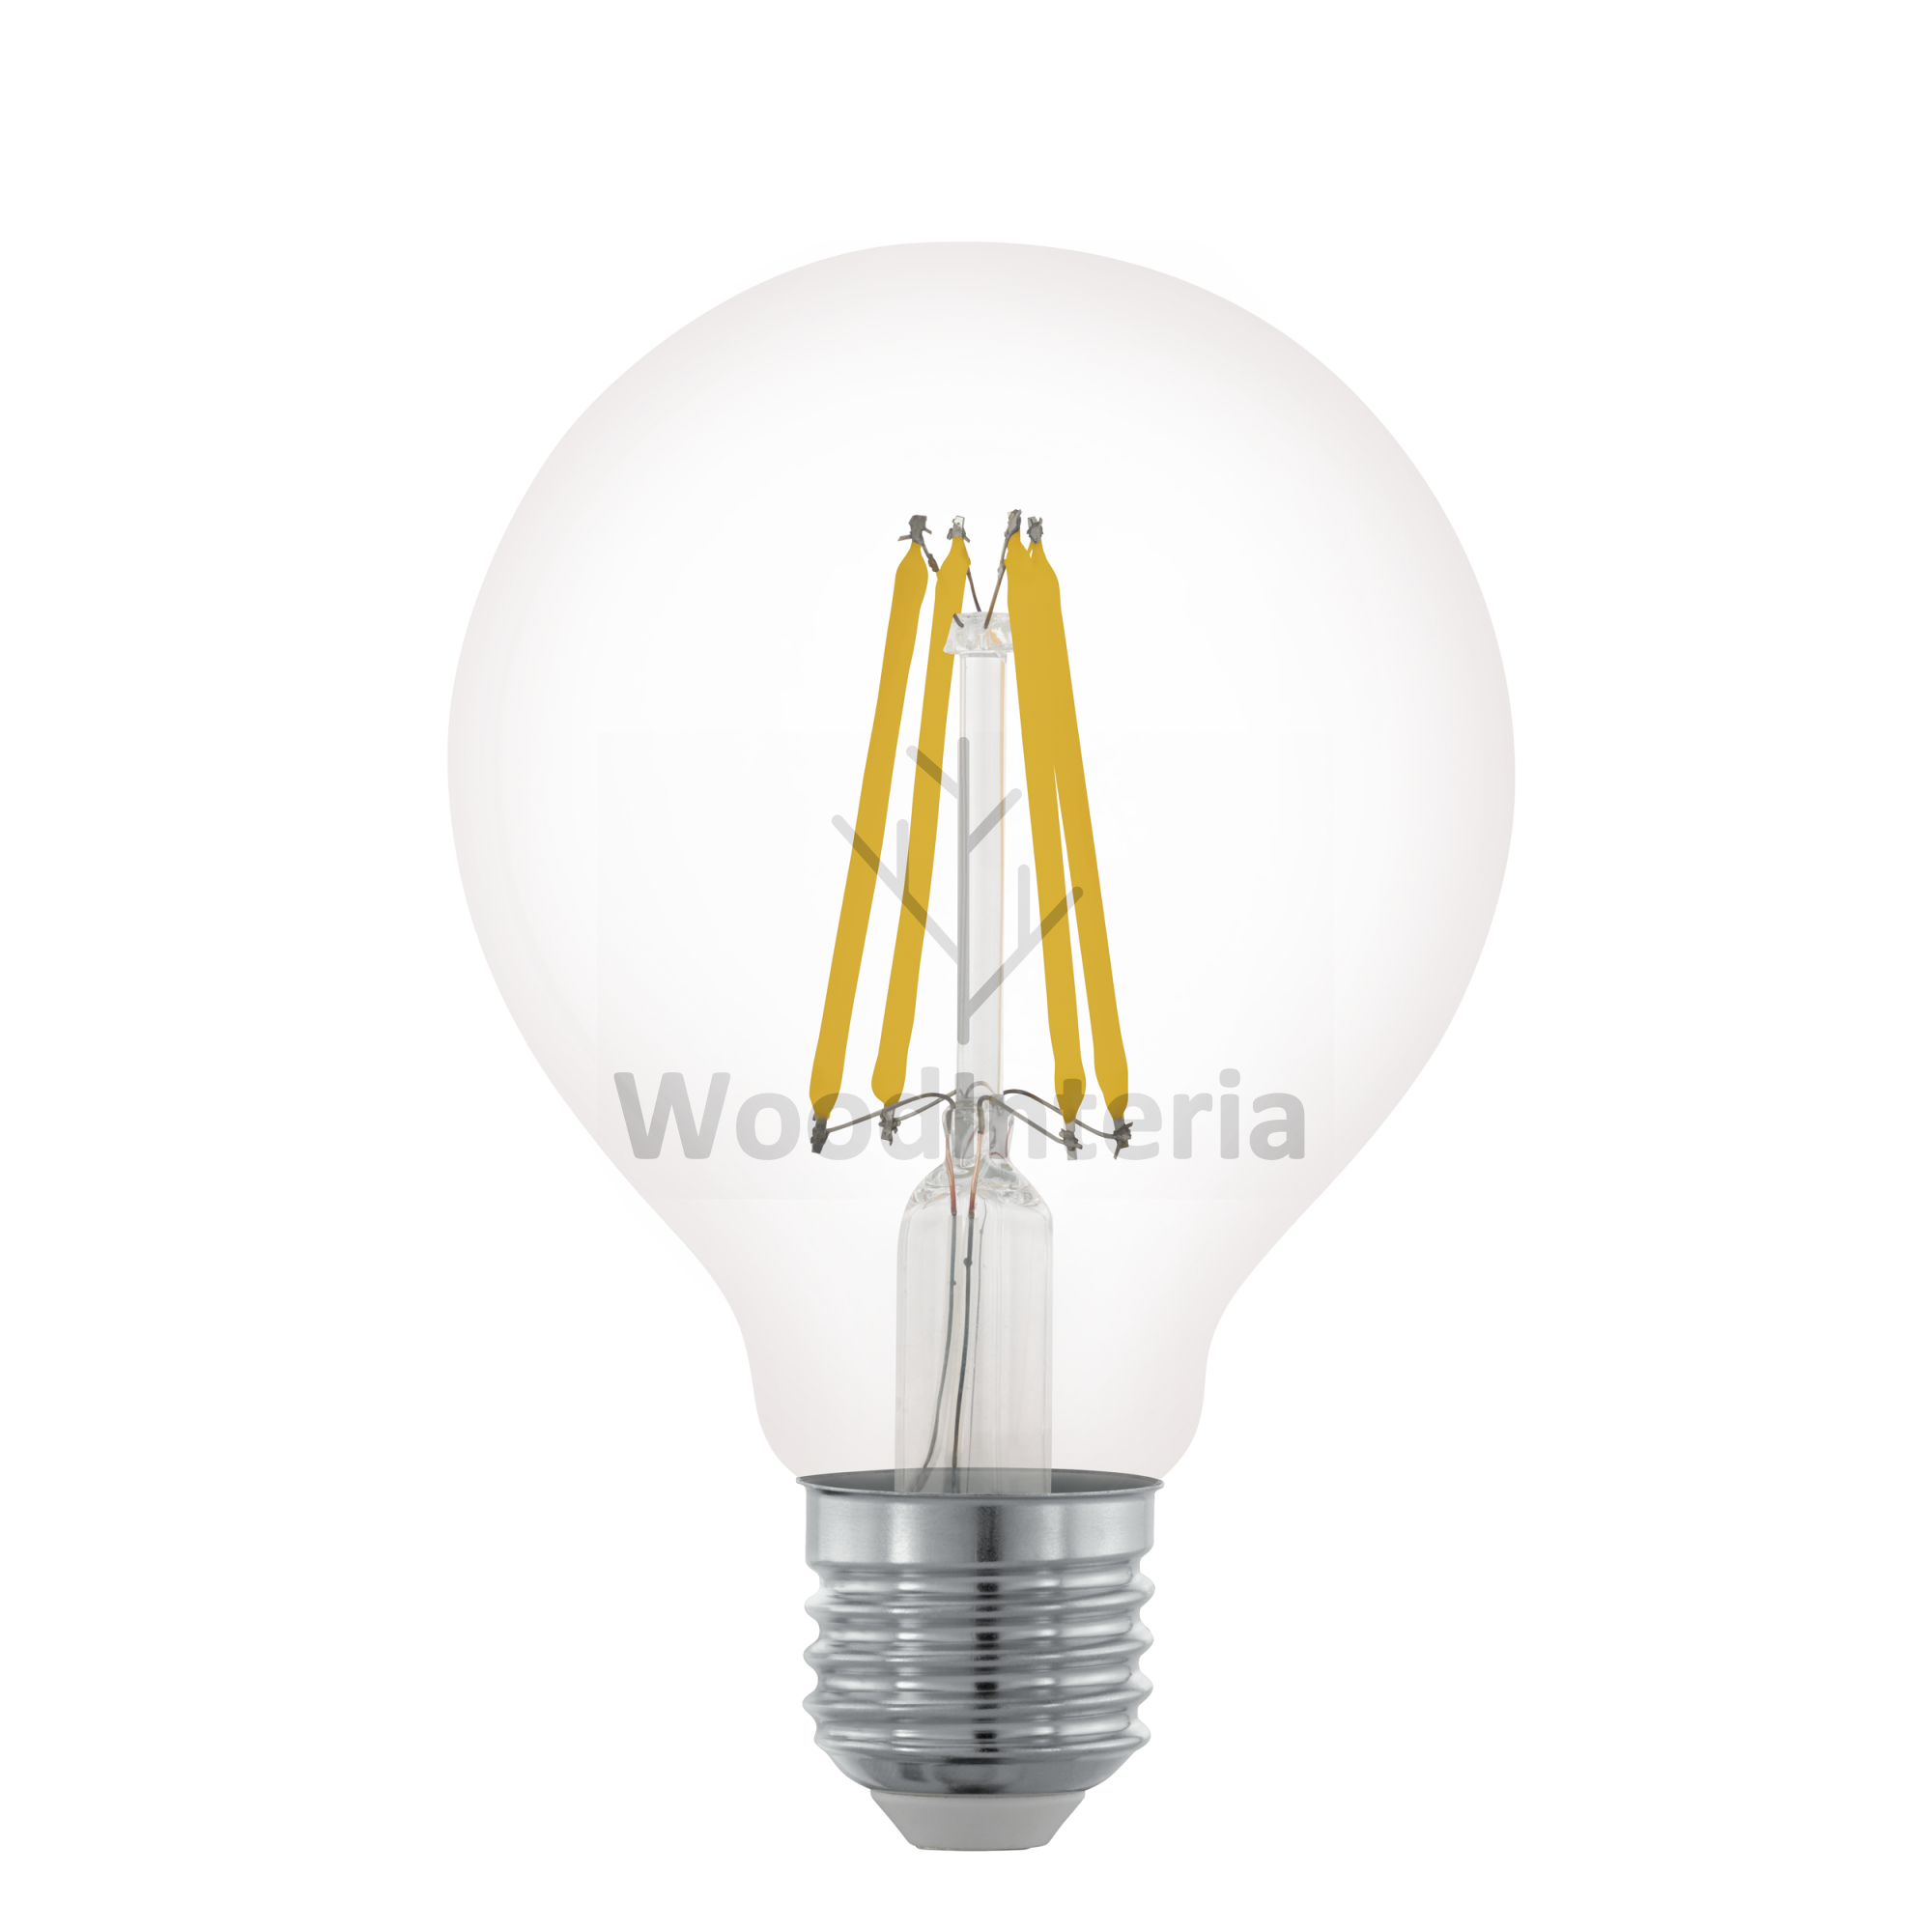 фото лампочка clean bulb #13 в скандинавском интерьере лофт эко | WoodInteria